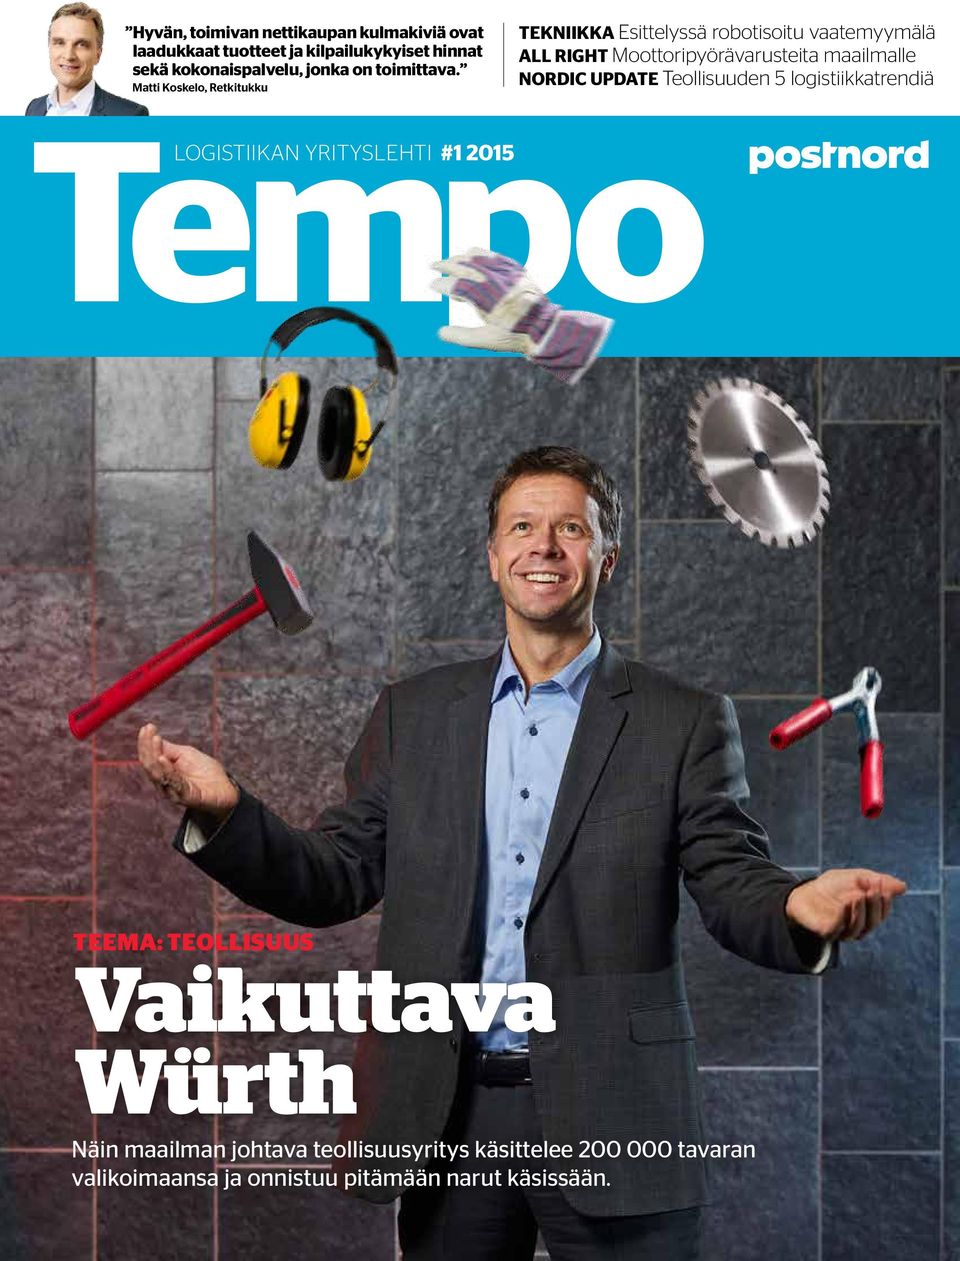 Matti Koskelo, Retkitukku TEKNIIKKA Esittelyssä robotisoitu vaatemyymälä ALL RIGHT Moottoripyörävarusteita maailmalle